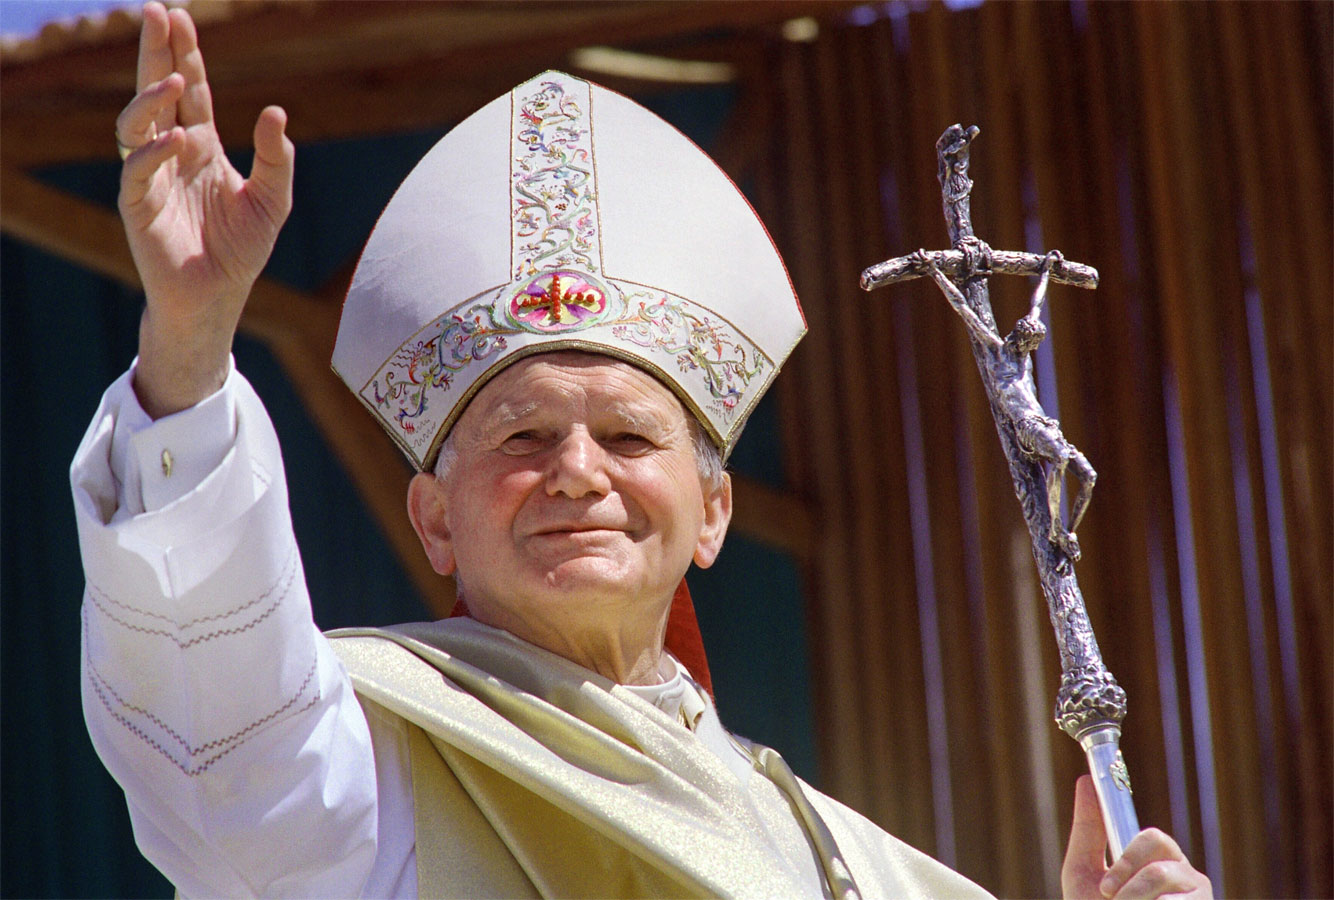 39 anni fa l’elezione di Giovanni Paolo II: il suo primo discorso da Pontefice